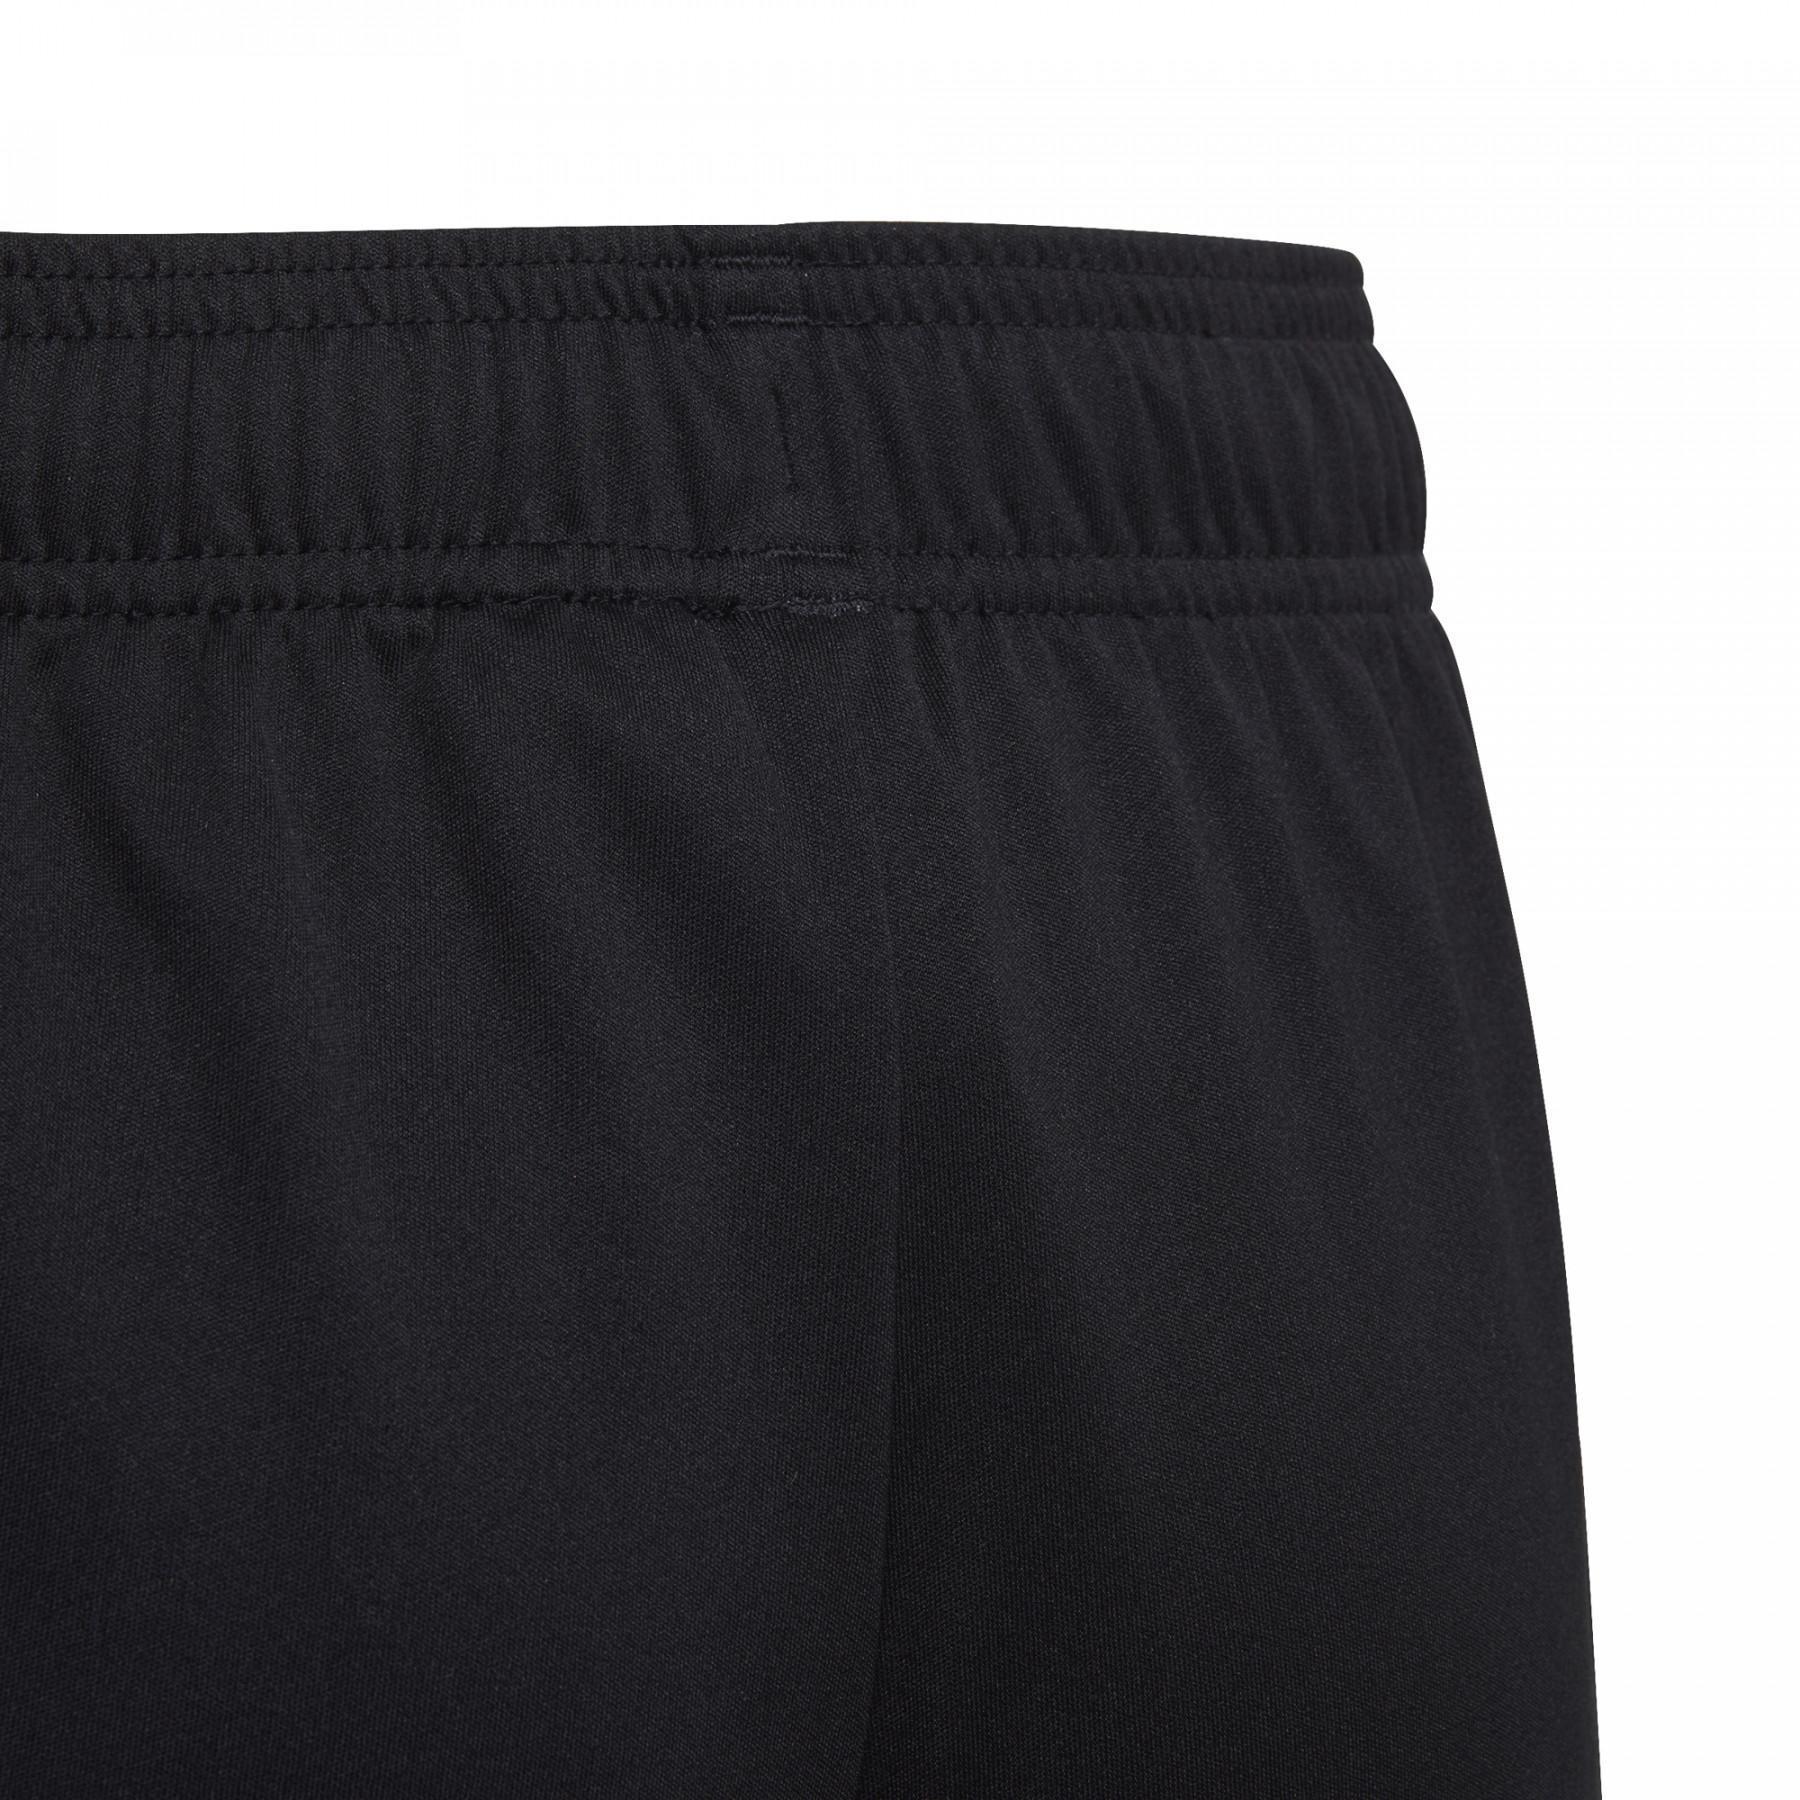 Pantalones cortos para niños adidas Tastigo 19